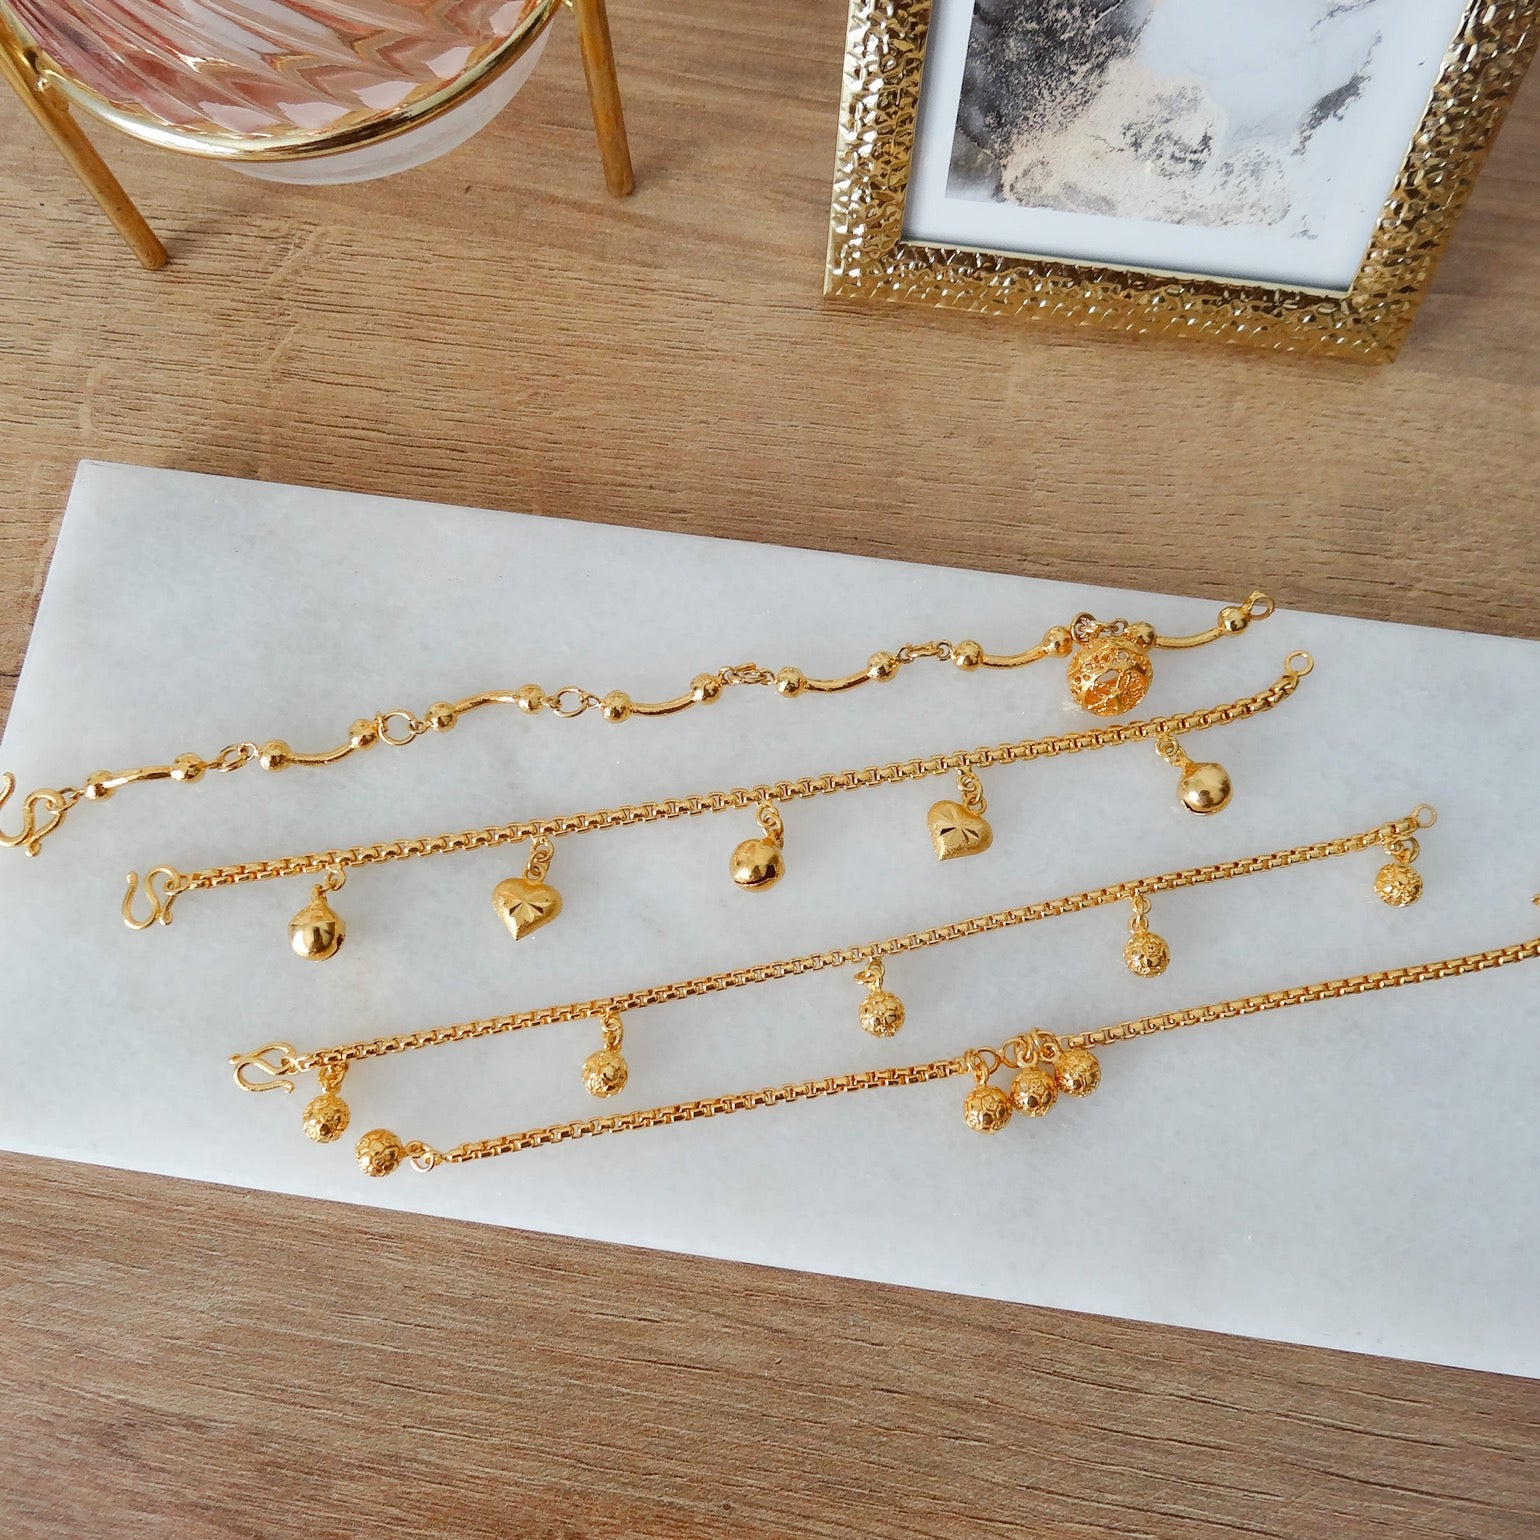 4 diverse schakel armbanden voor dames. Dit zijn gold plated armbanden.